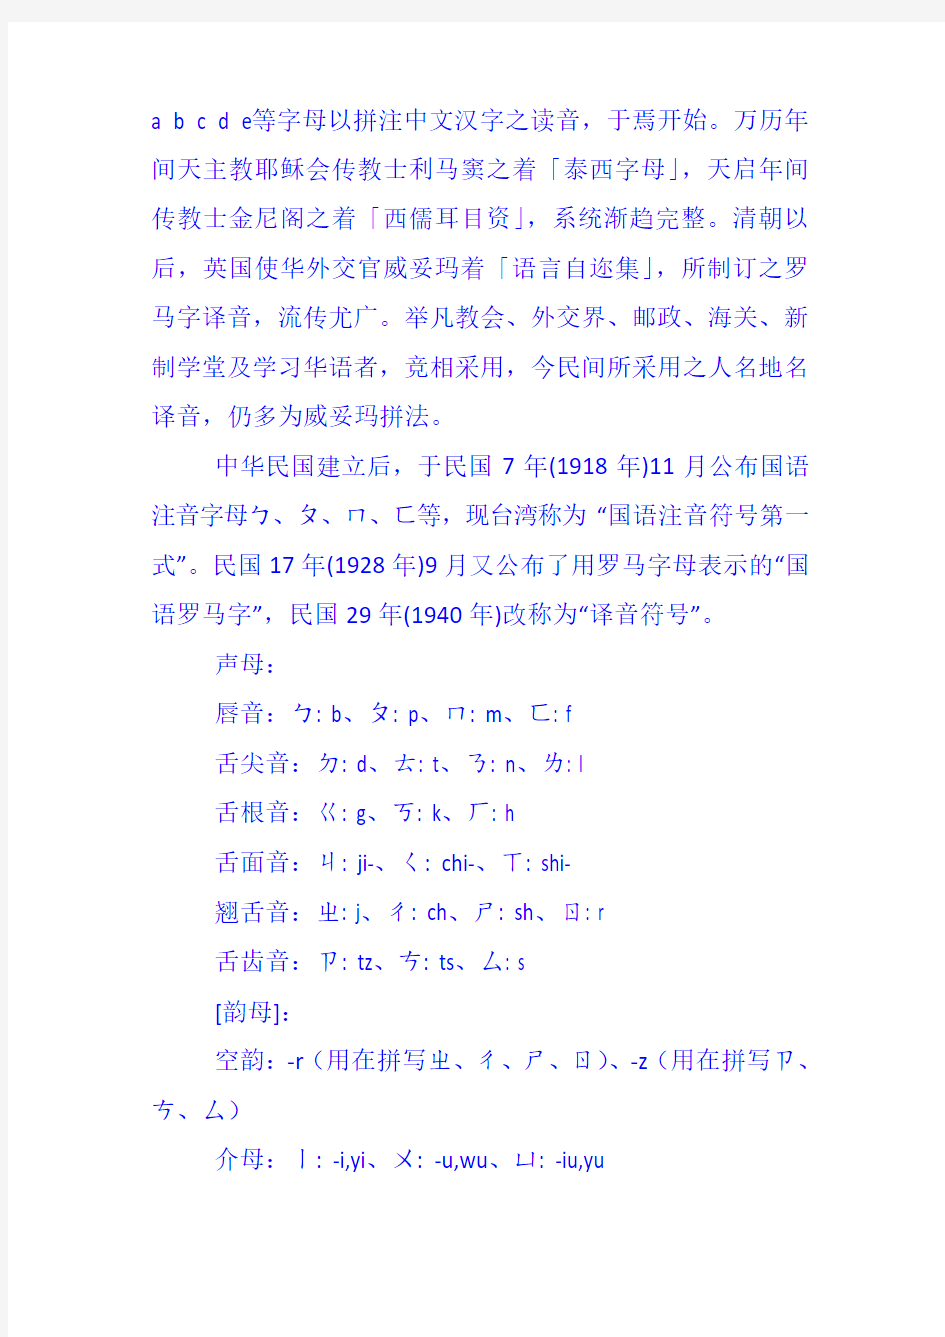 台湾通用拼音与大陆汉语拼音对照简表